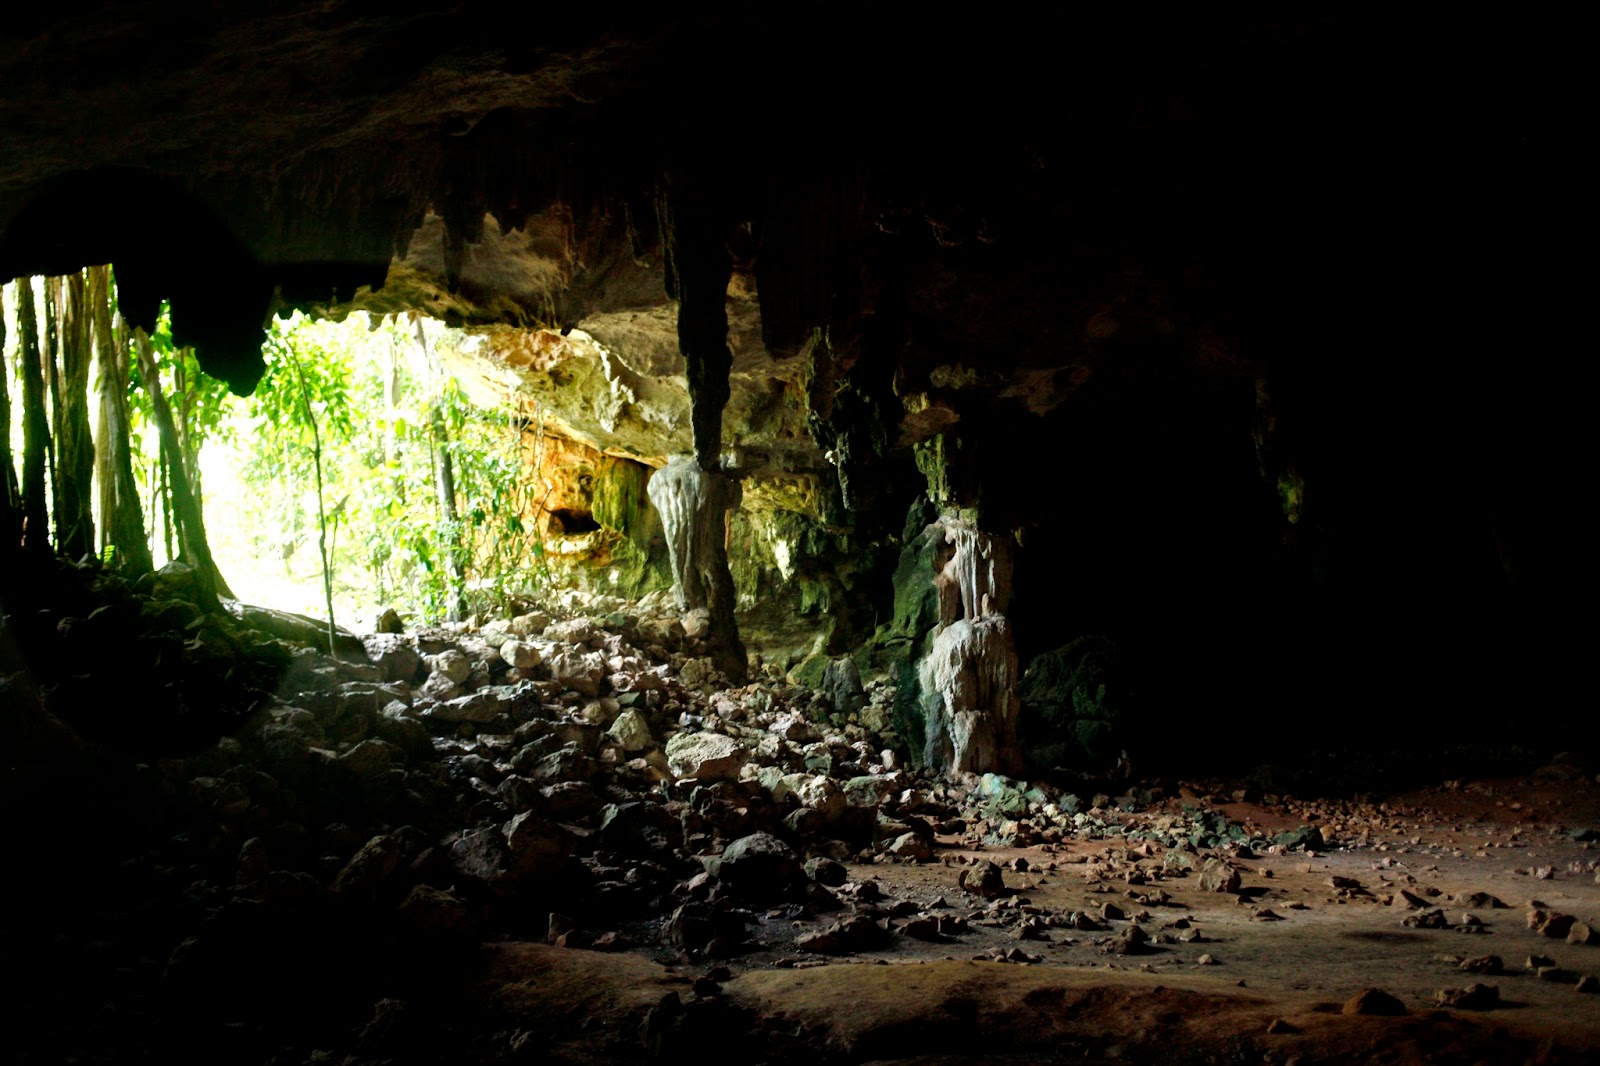 El libro afirmaba que cerca de Oxkintok existía una cueva donde los primeros mayas hacían las ceremonias para iniciar a sus h-mem,  sus sanadores o chamanes.  La cueva se llama Aktun Usil. Aktun viene de las palabras Ak, caparazón de tortuga y tun, piedra, así que significa el caparazon de piedra.